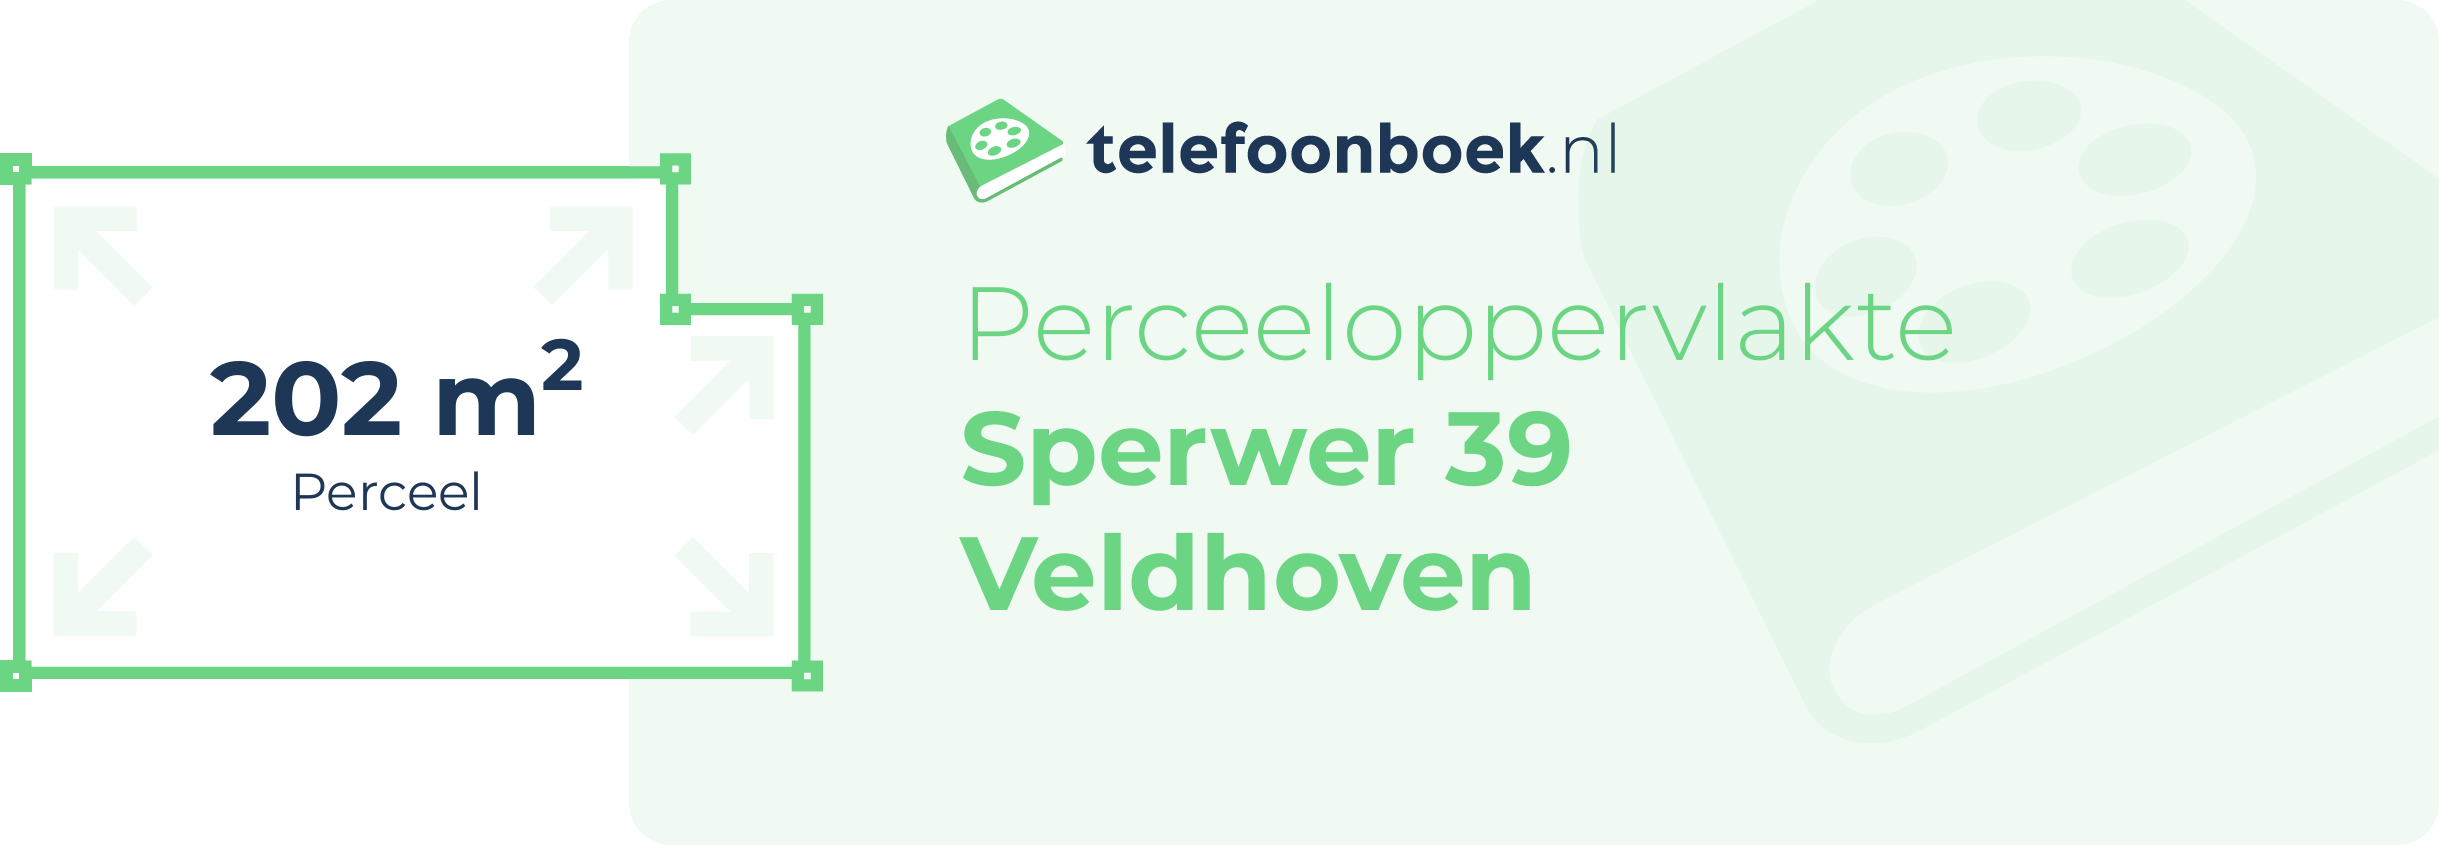 Perceeloppervlakte Sperwer 39 Veldhoven